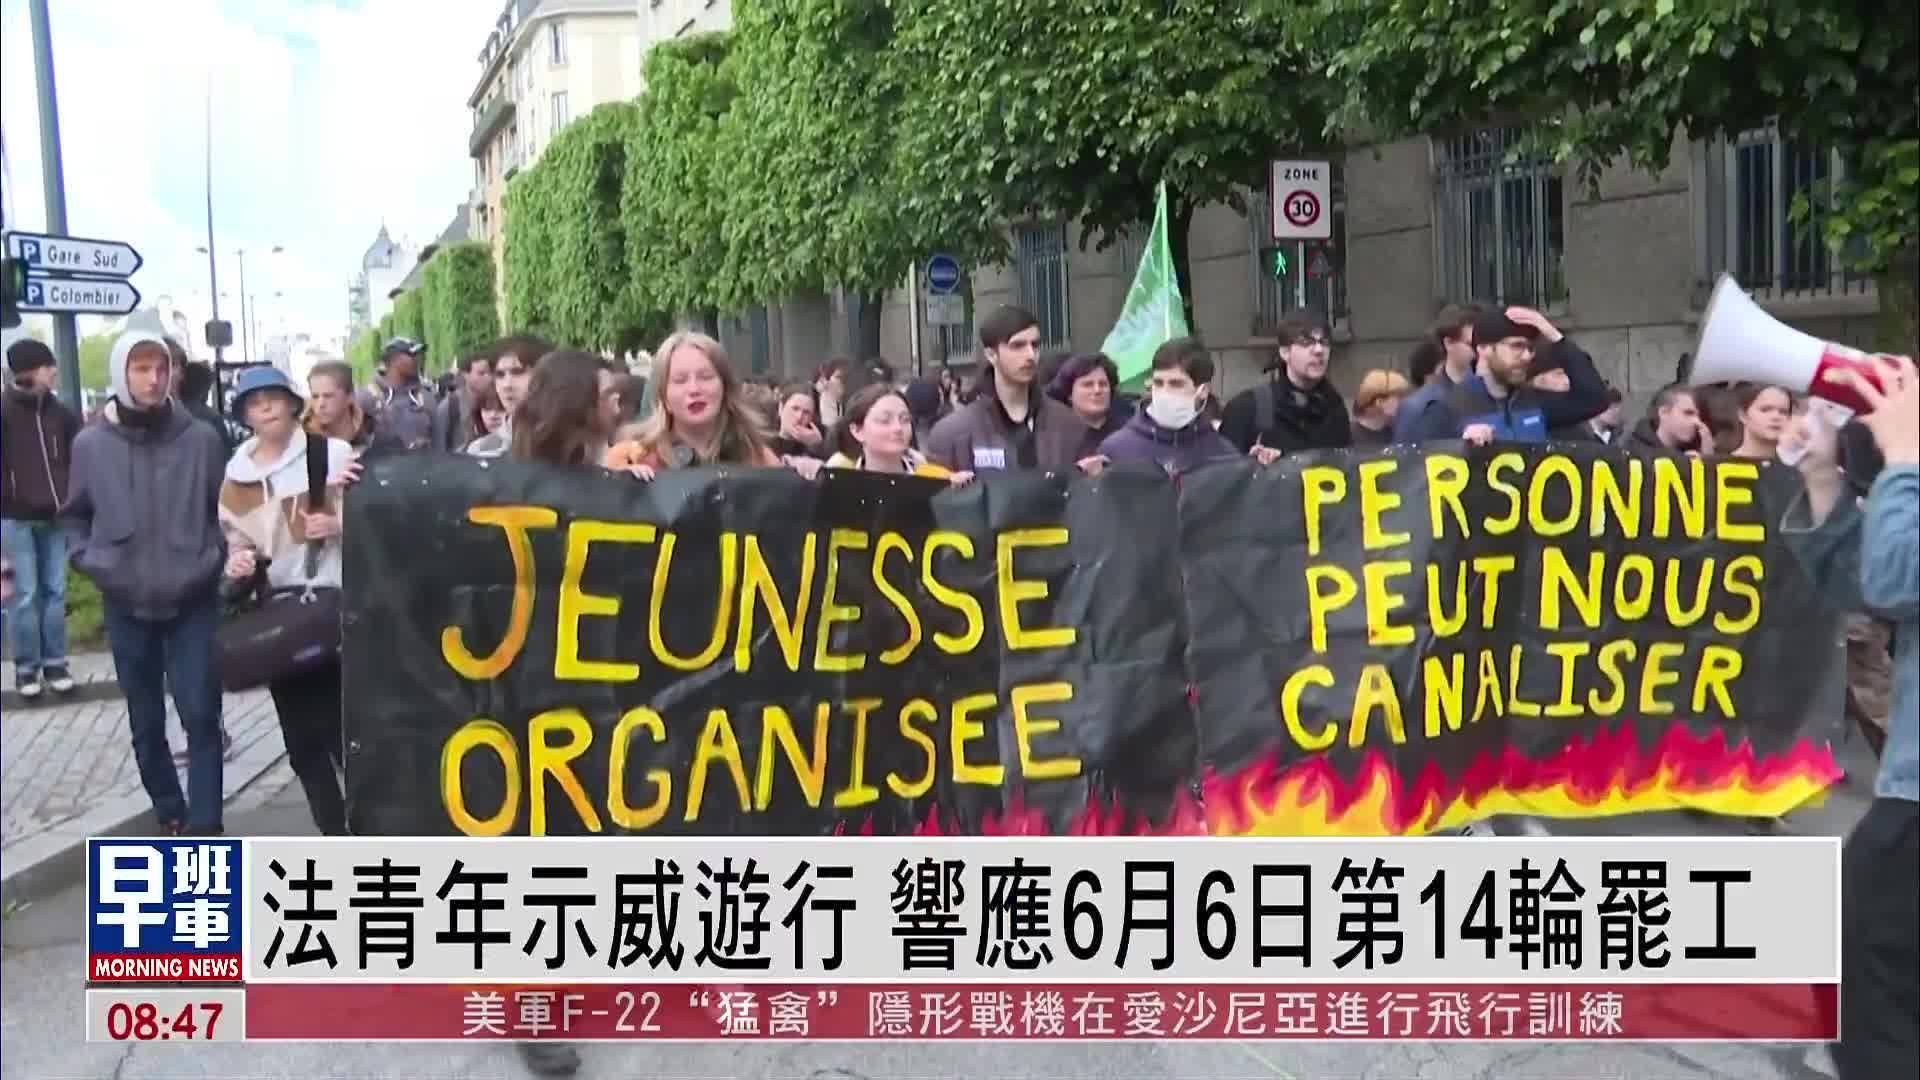 法国青年示威游行 响应6月6日第14轮罢工